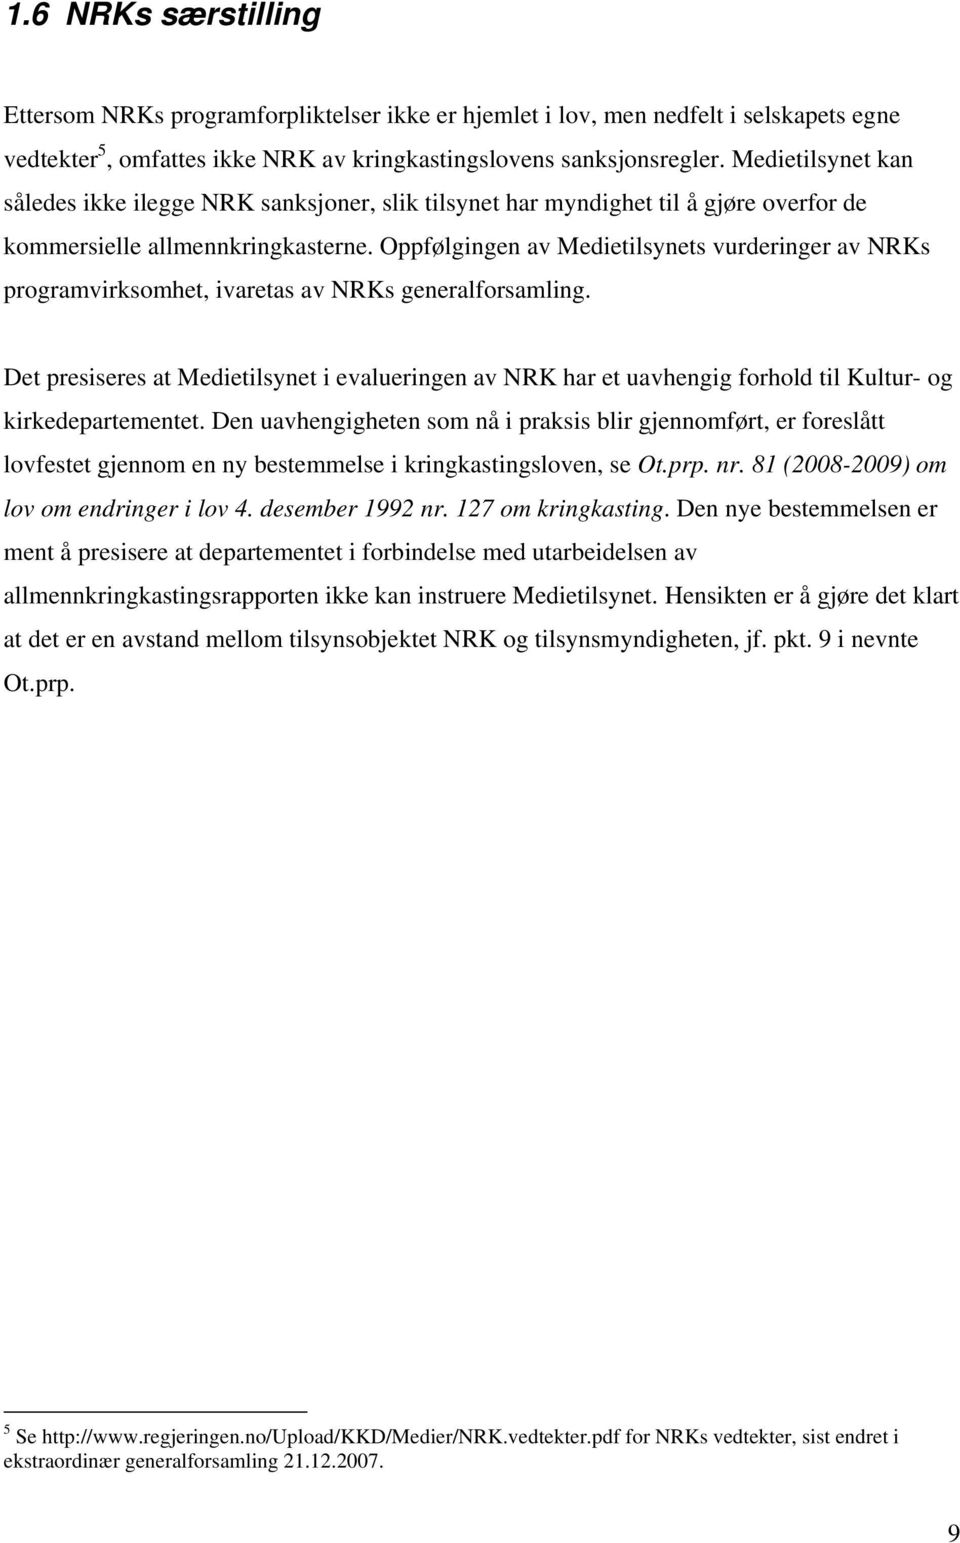 Oppfølgingen av Medietilsynets vurderinger av NRKs programvirksomhet, ivaretas av NRKs generalforsamling.